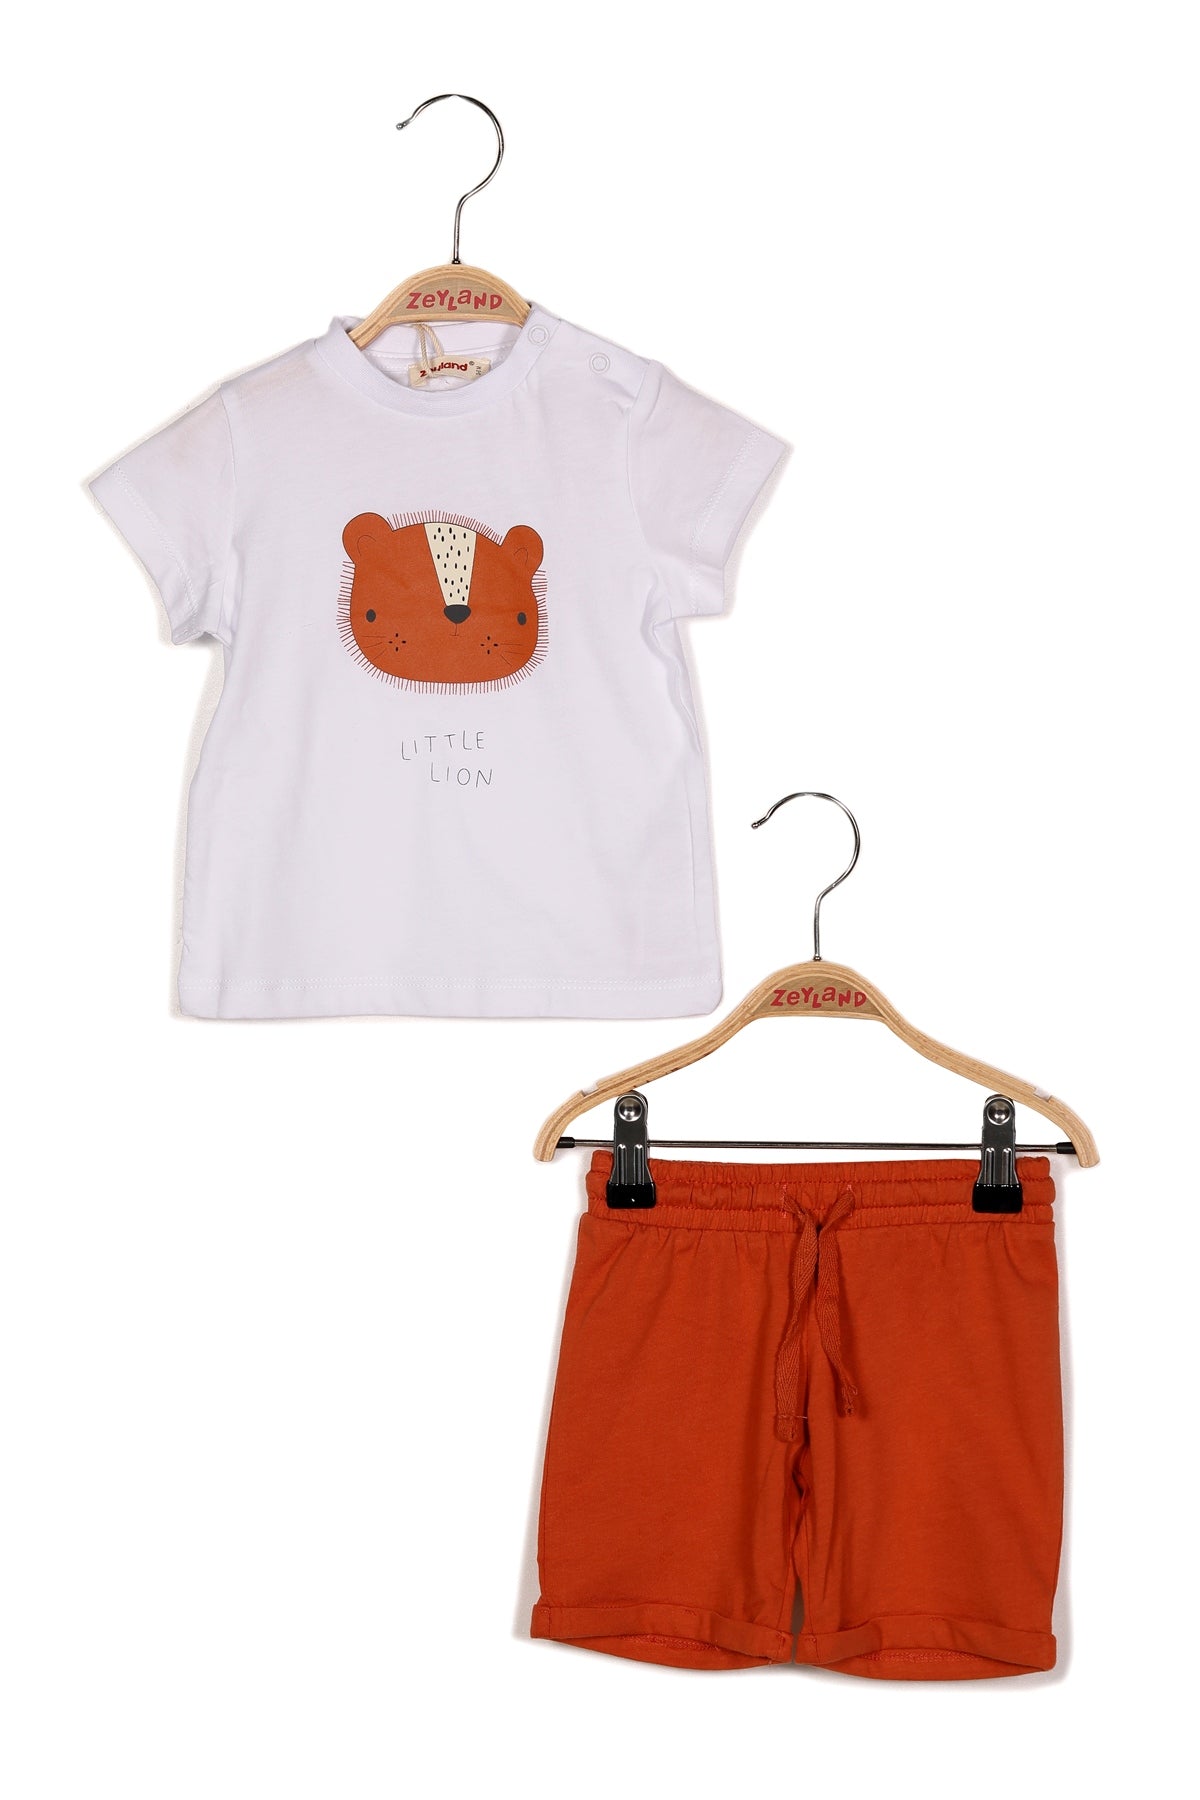 Erkek Bebek Little Lion Baskılı T-shirt ve Şort Takım-2